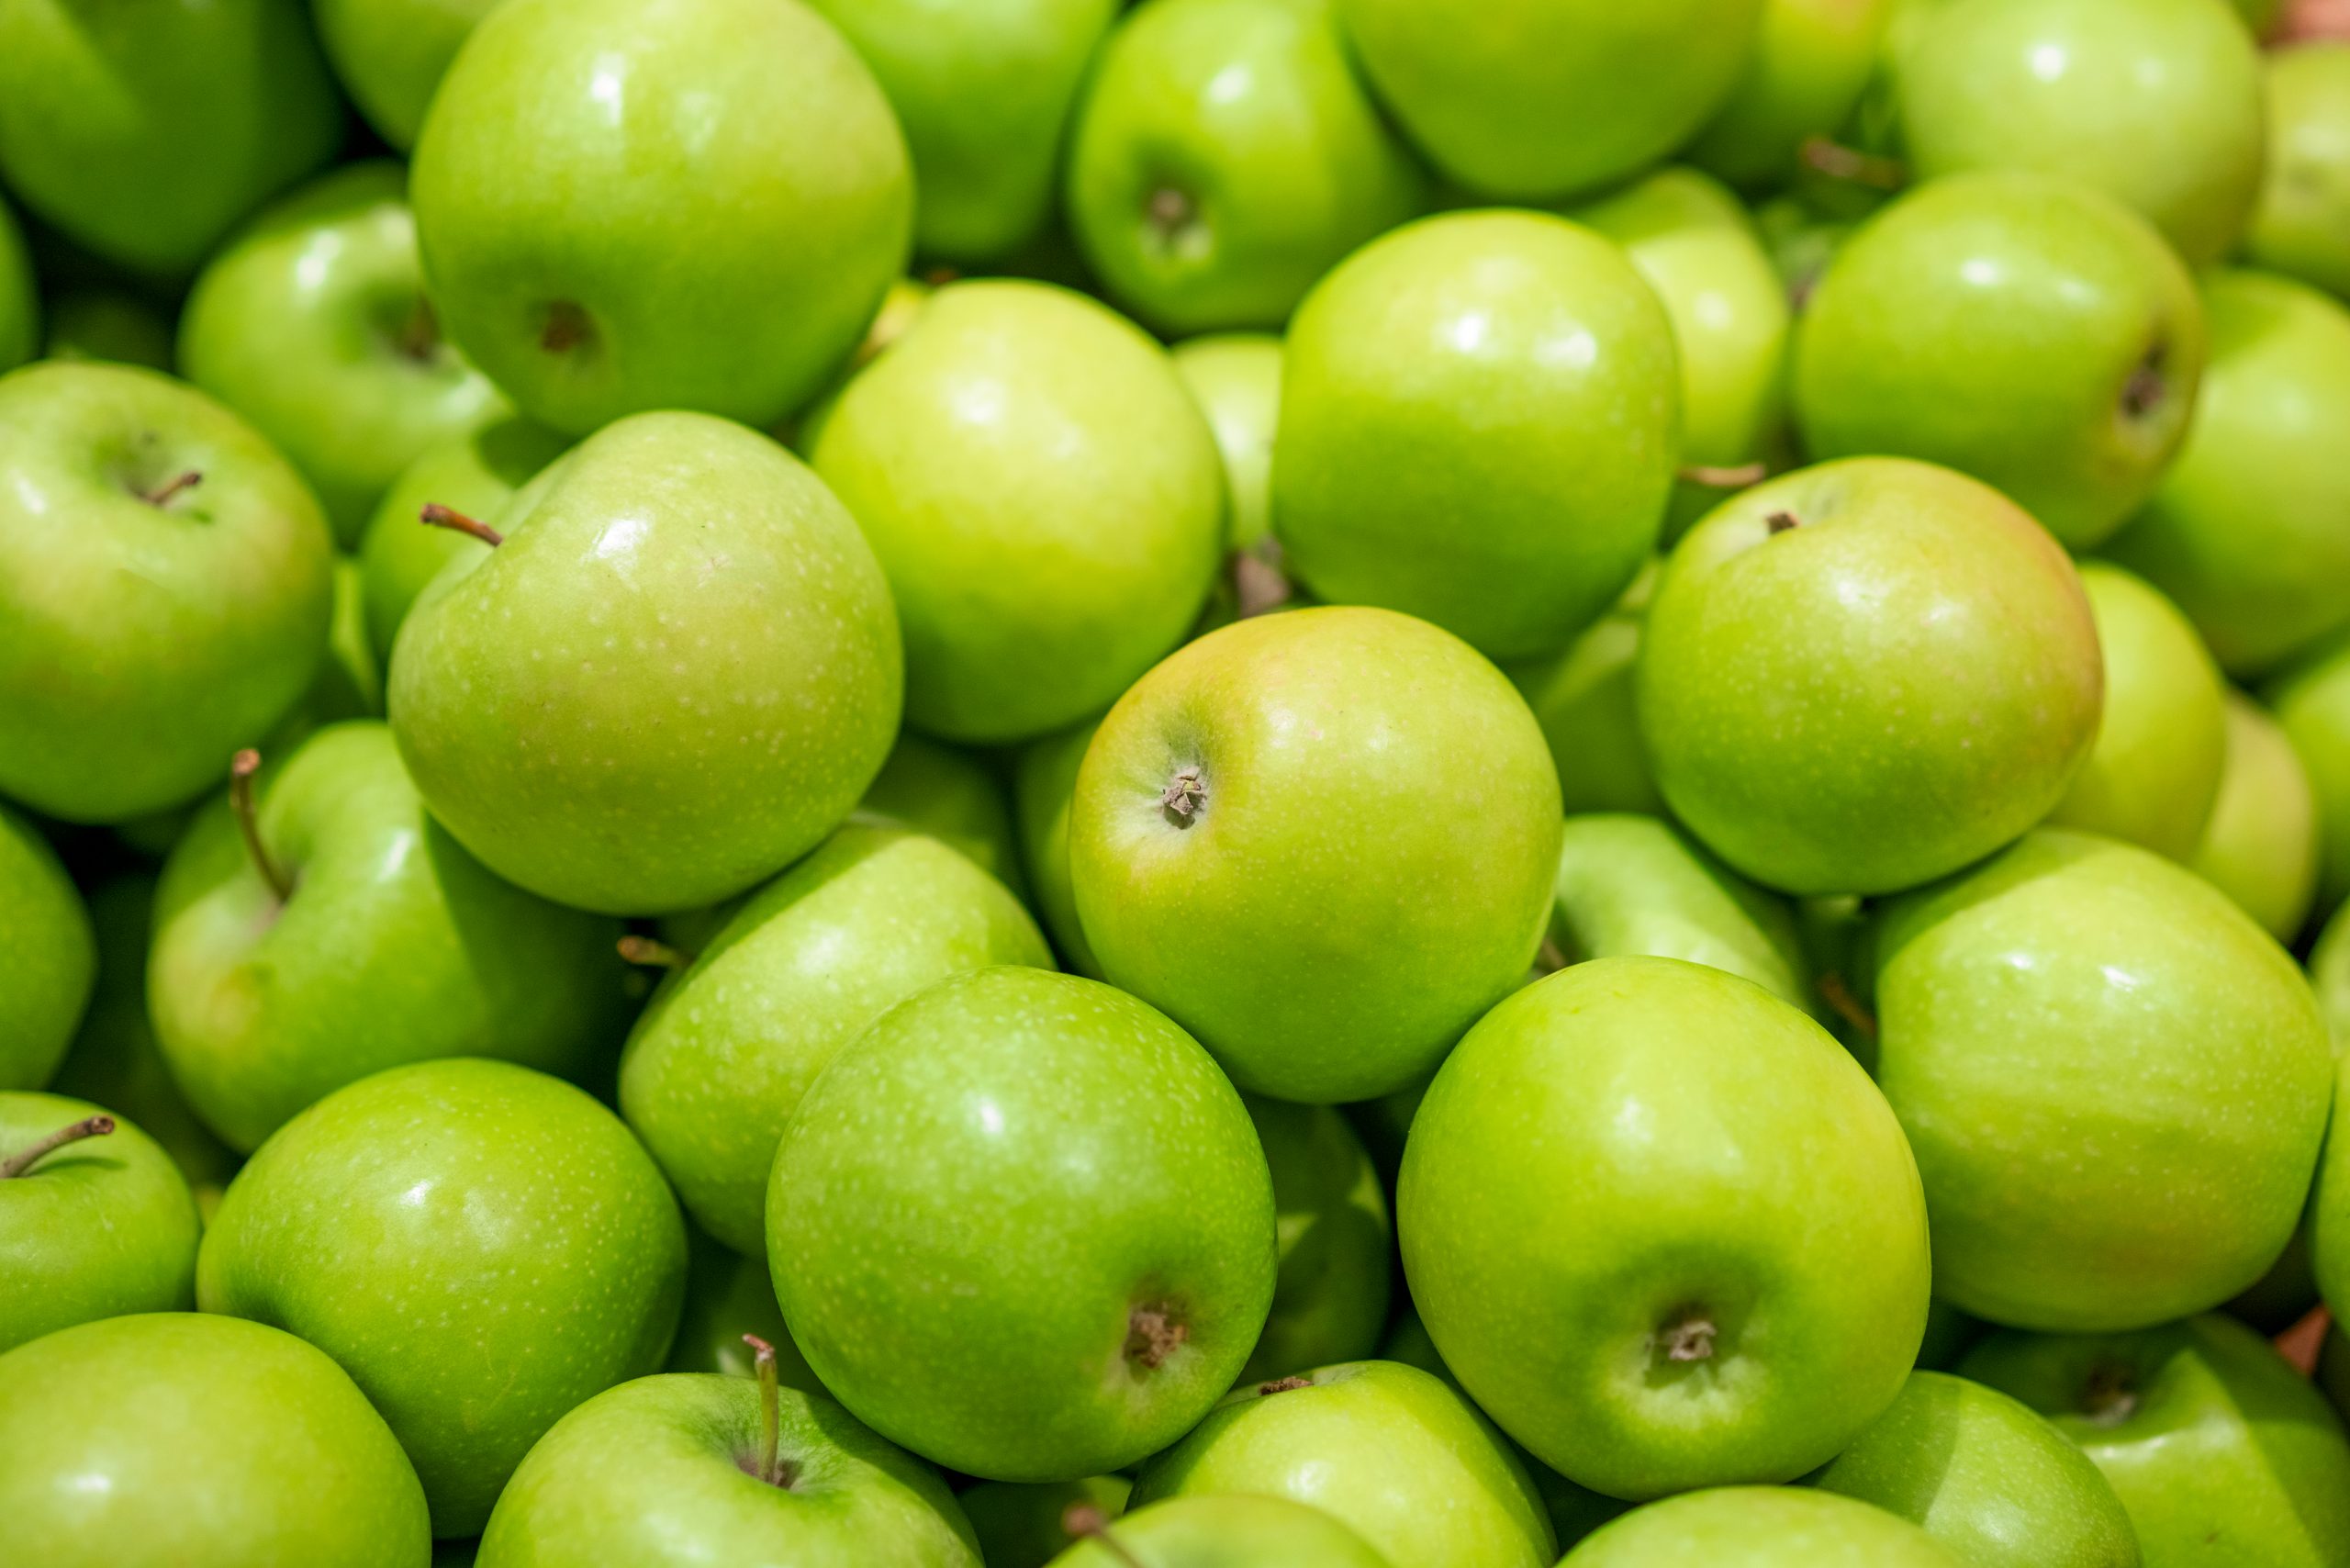 Abonos órgano minerales Inprog específicos para el cultivo de manzana